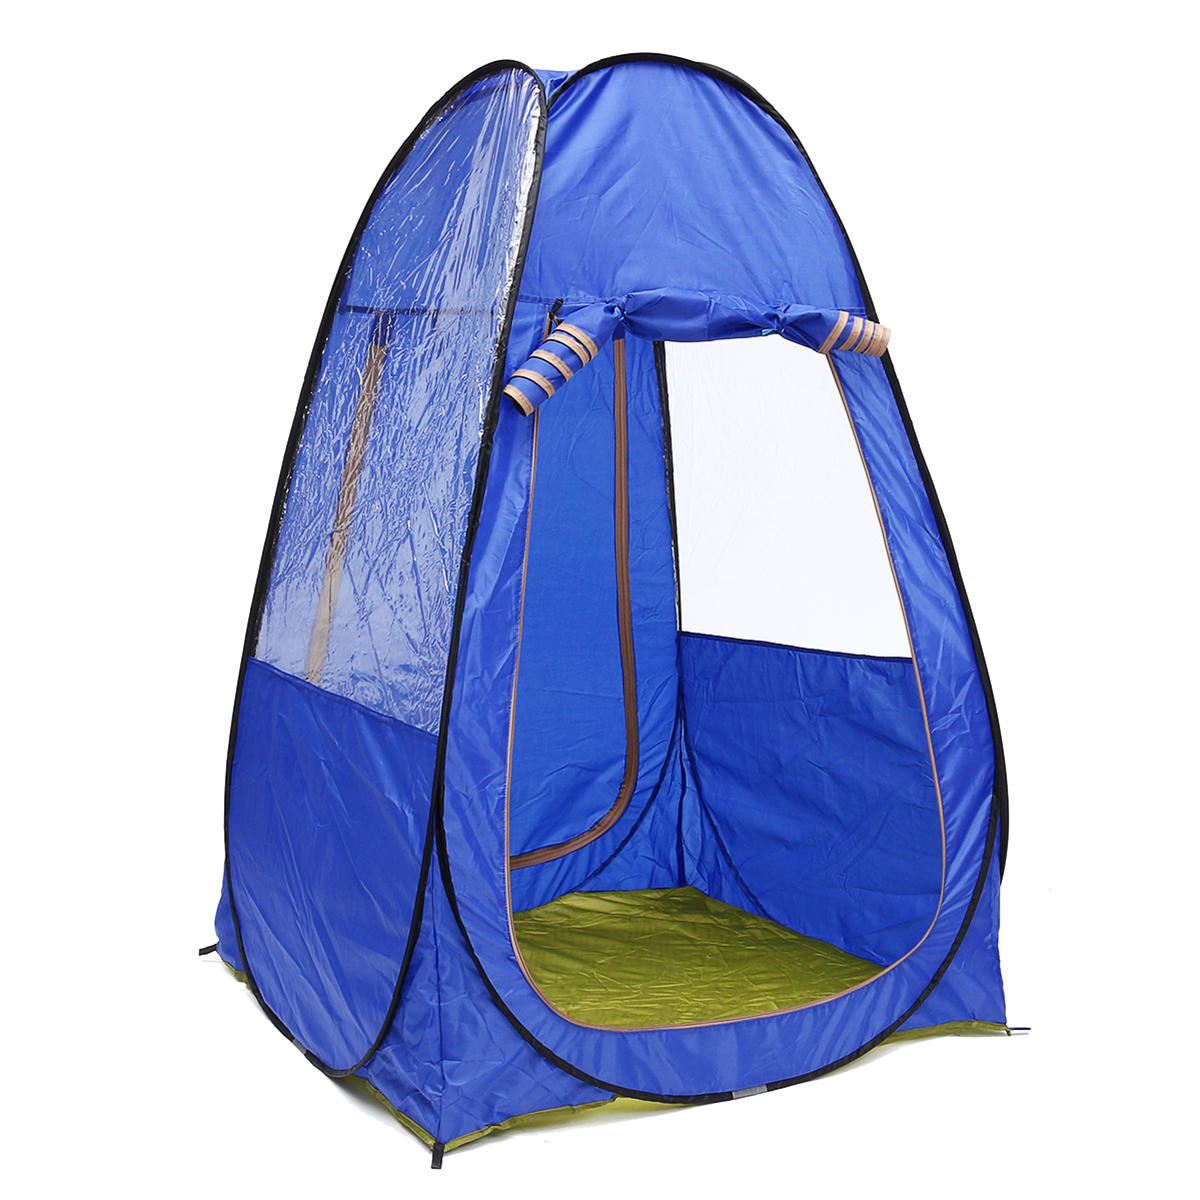 Tenda da campeggio portatile per 1-2 persone, pieghevole, a prova di raggi UV, impermeabile, con tettoia parasole